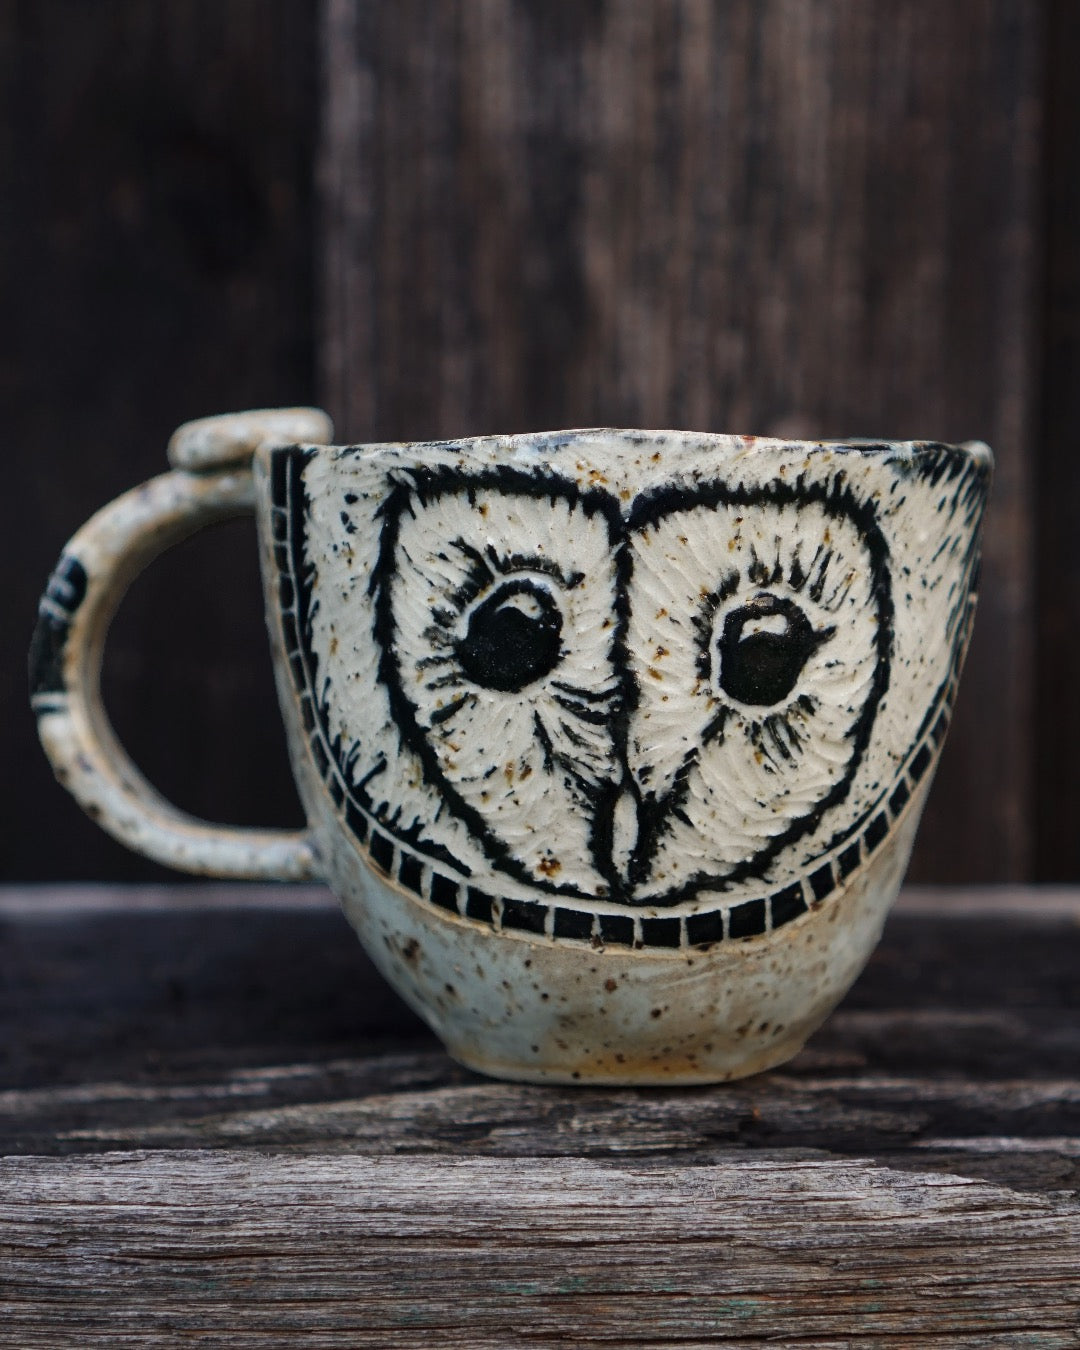 Friendly Owl Mug